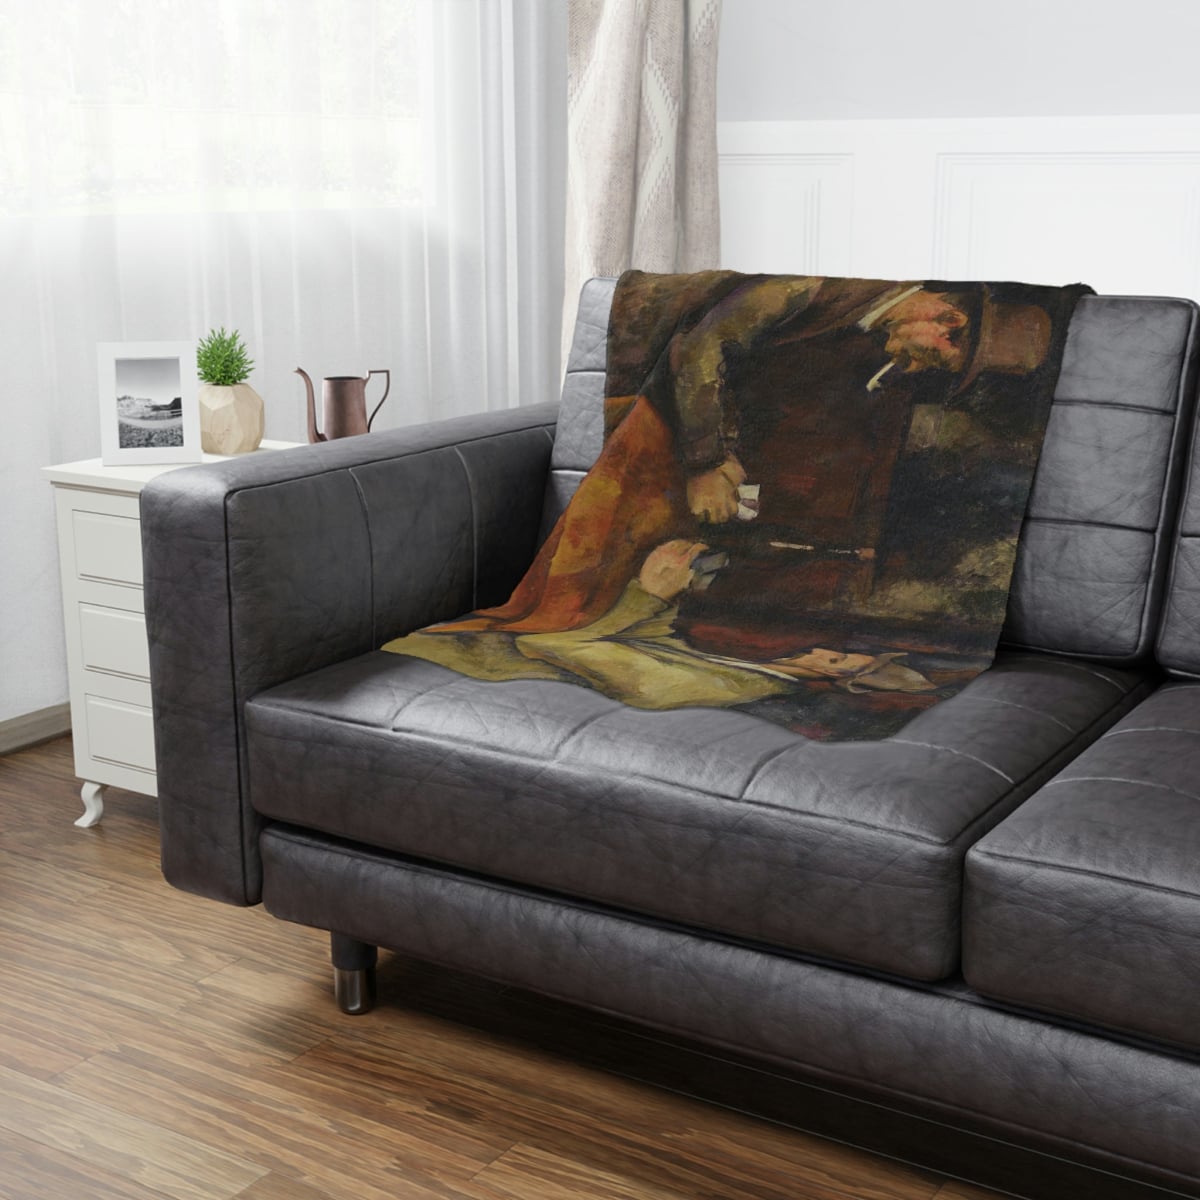 Luxurious art-inspired blanket for interior design